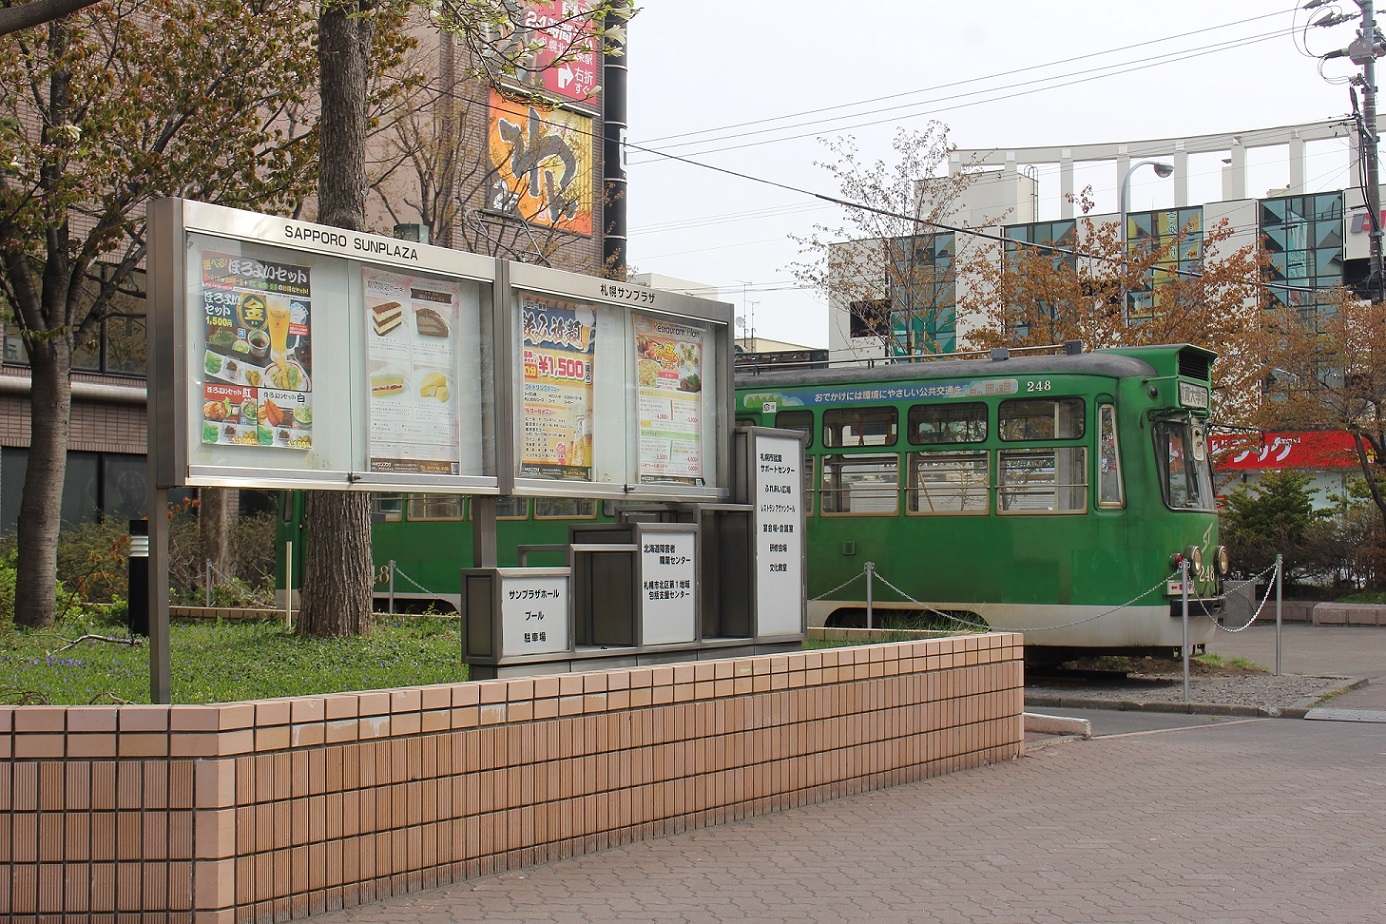 札幌市電240形248号車(札幌サンプラザ)a18